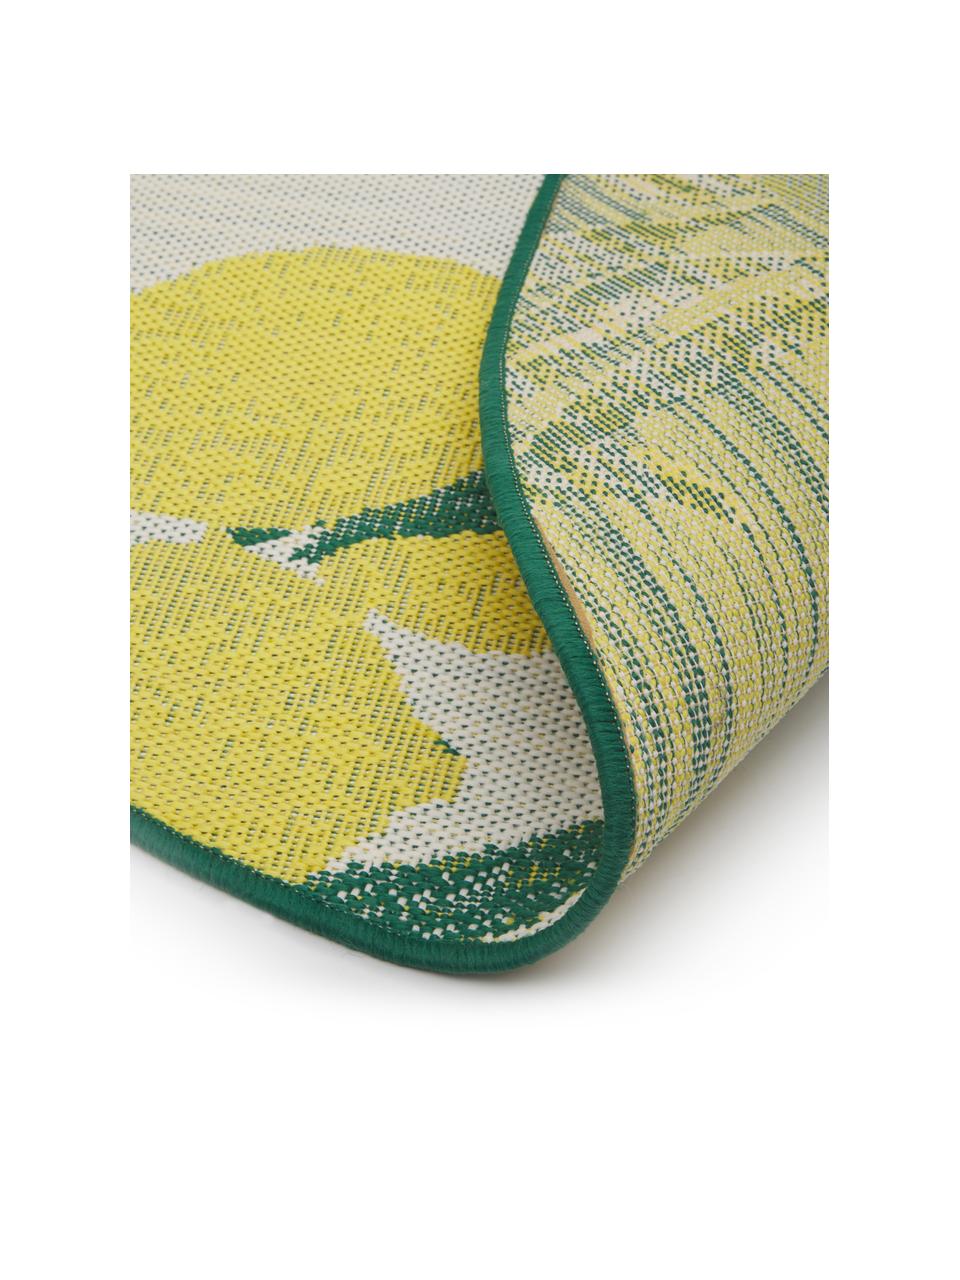 Vnitřní a venkovní koberec s potiskem s citróny Limonia, 86 % polypropylen, 14 % polyester, Bílá, žlutá, zelená, Ø 140 cm (velikost M)